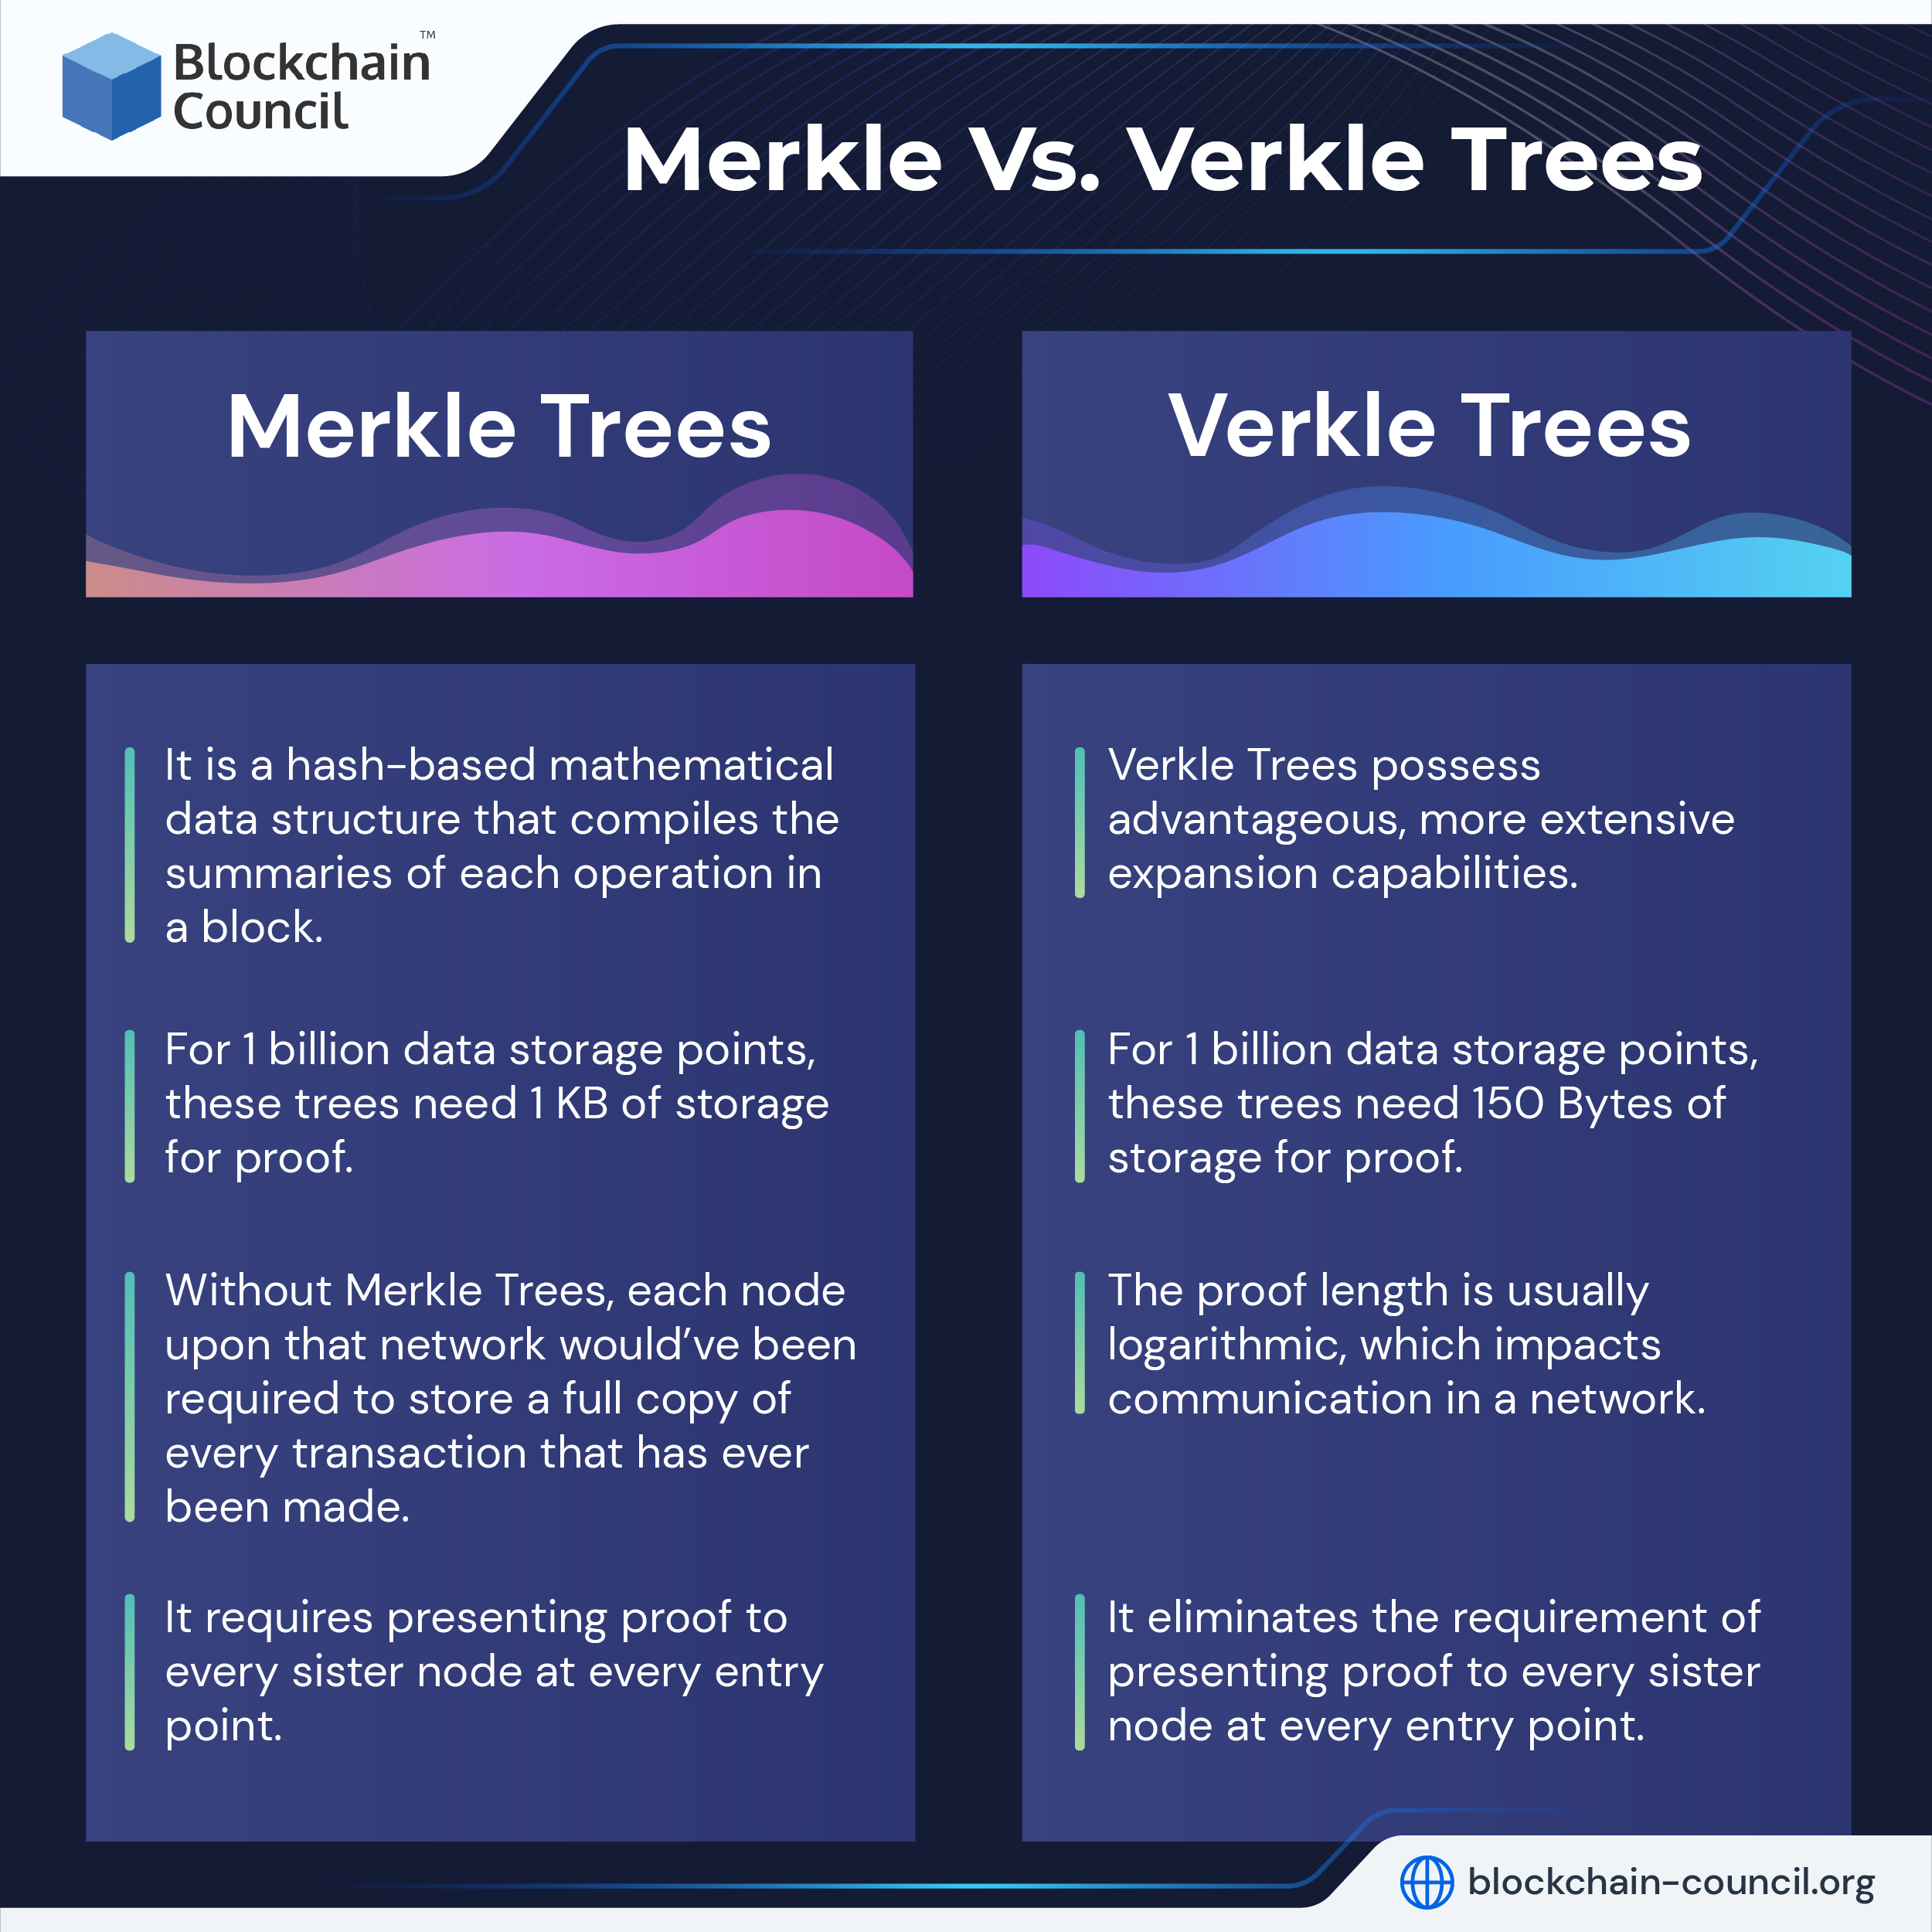 Merkle Vs. Verkle Trees